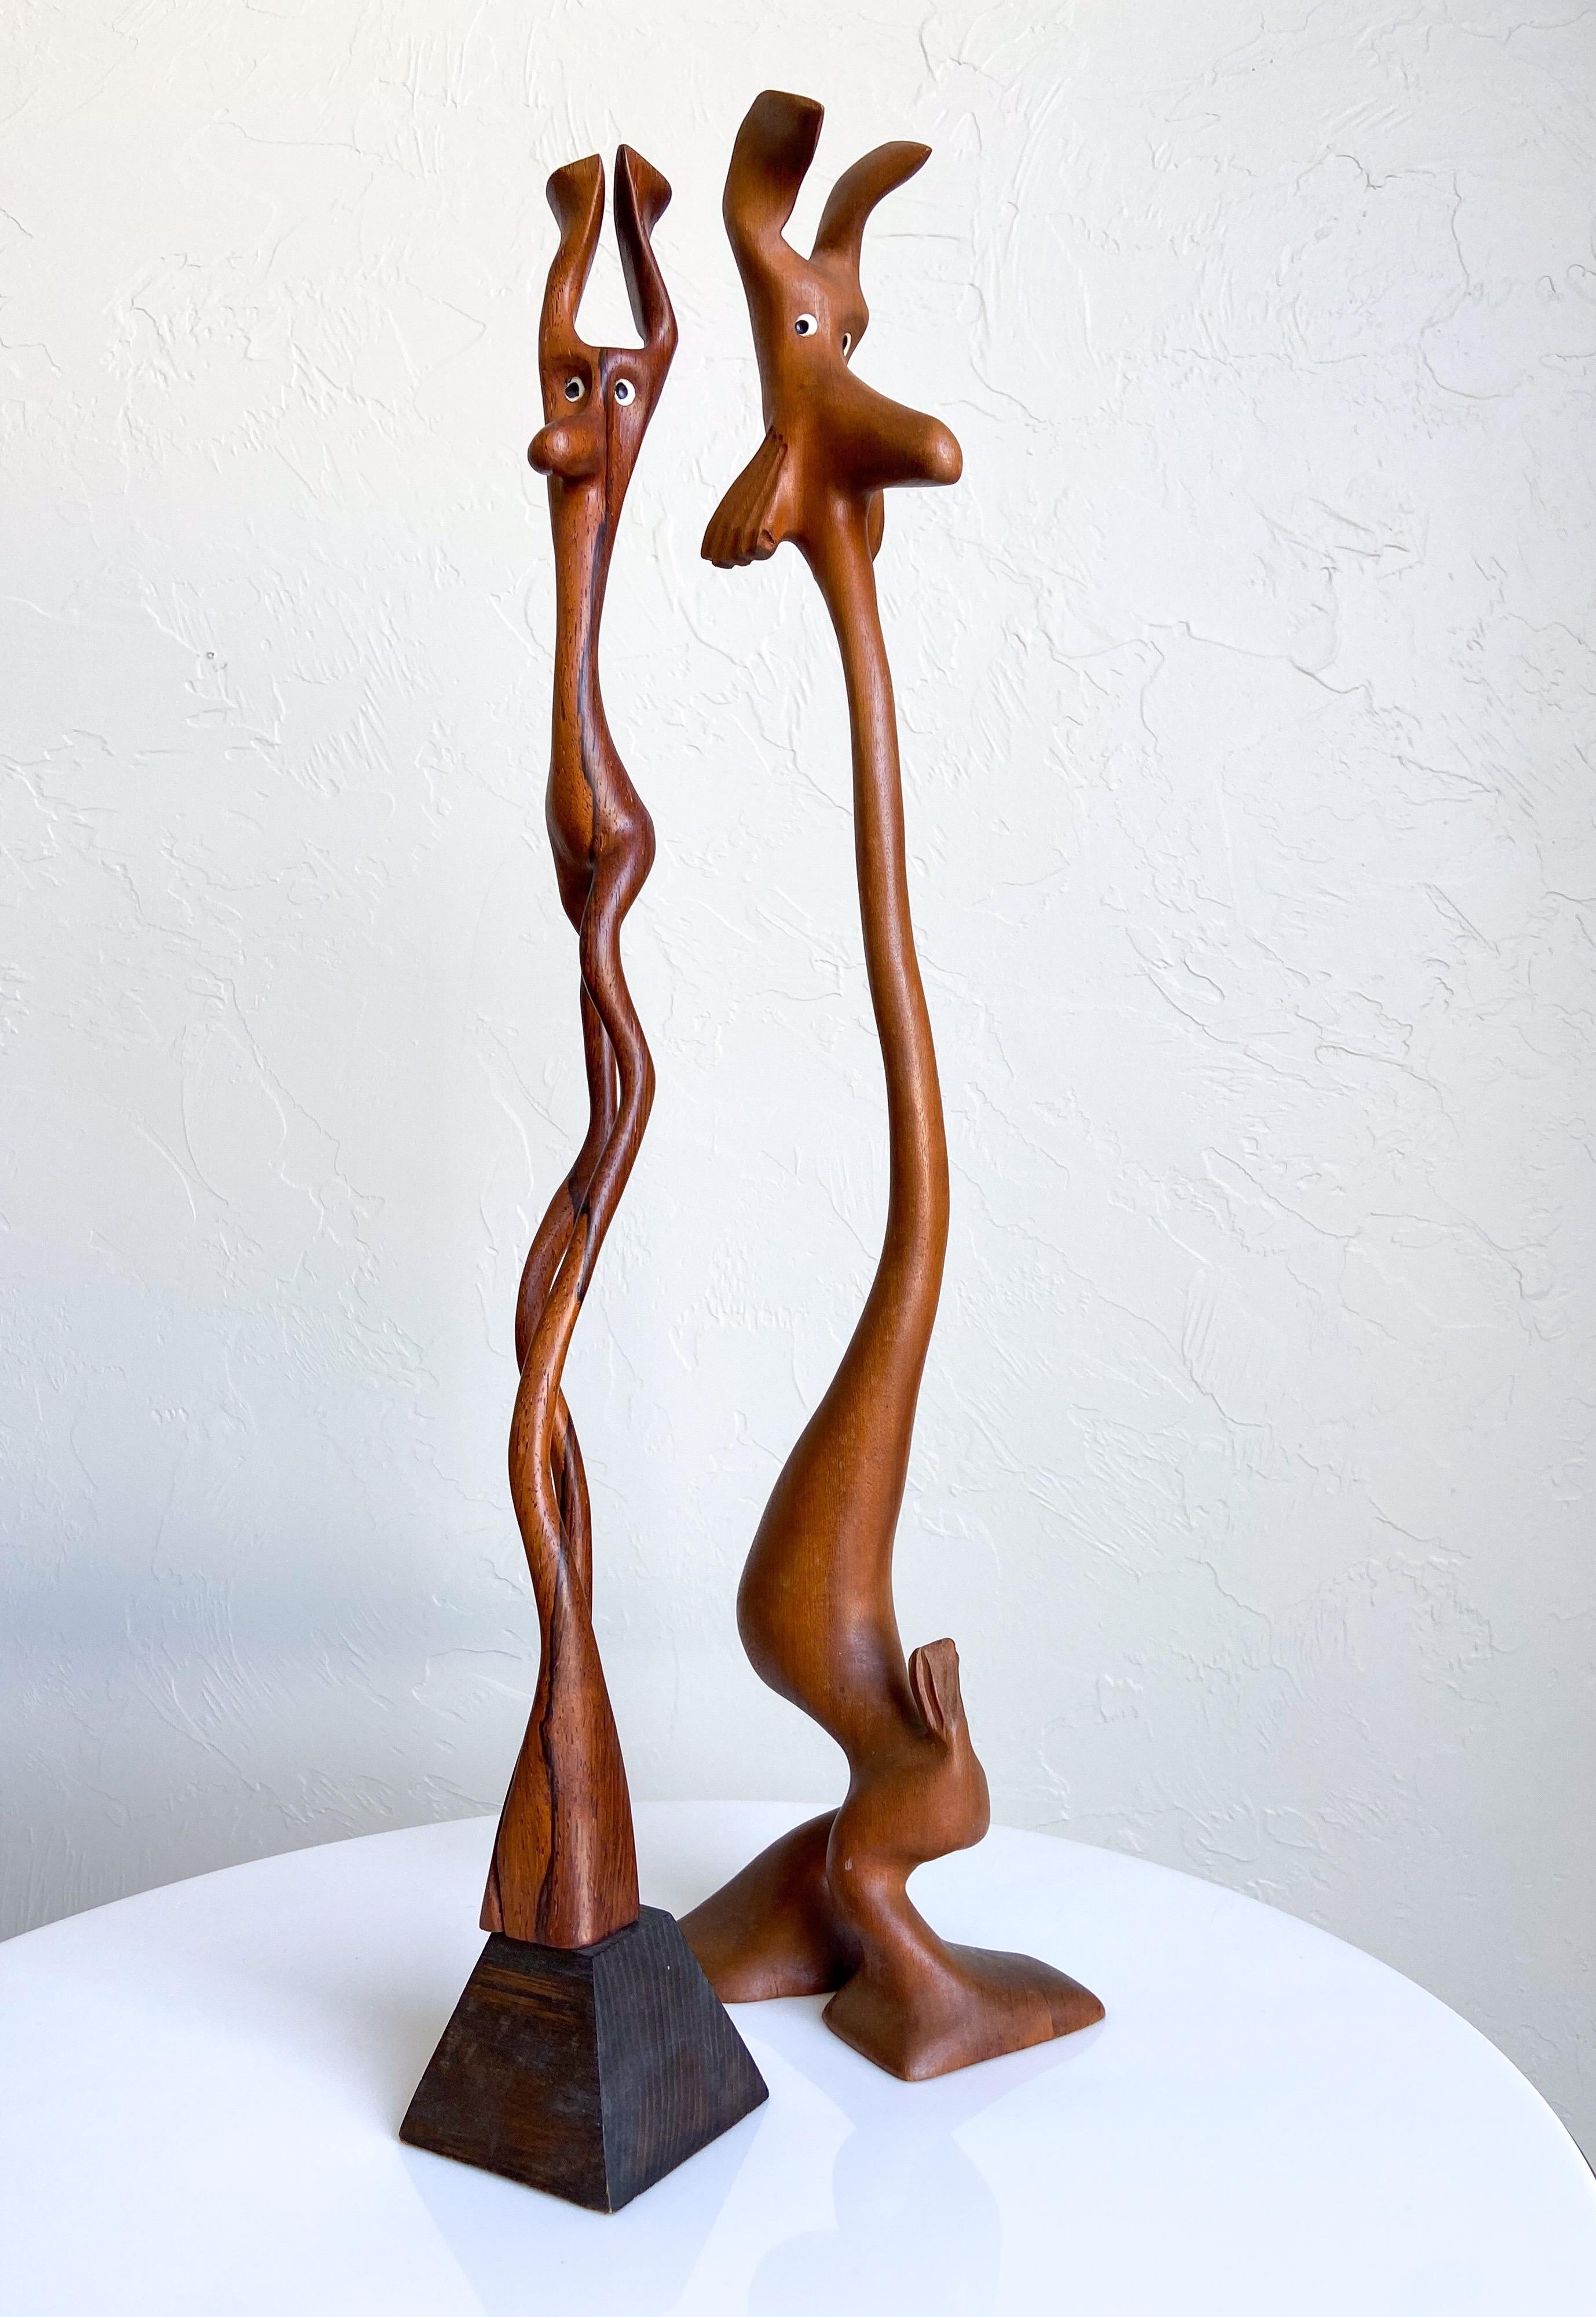 Une paire rare de sculptures d'animaux organiques et abstraites, sculptées à la main par Knud Albert. Chaque figure est sculptée dans une seule pièce de bois. Elles sont toutes uniques et uniques en leur genre.